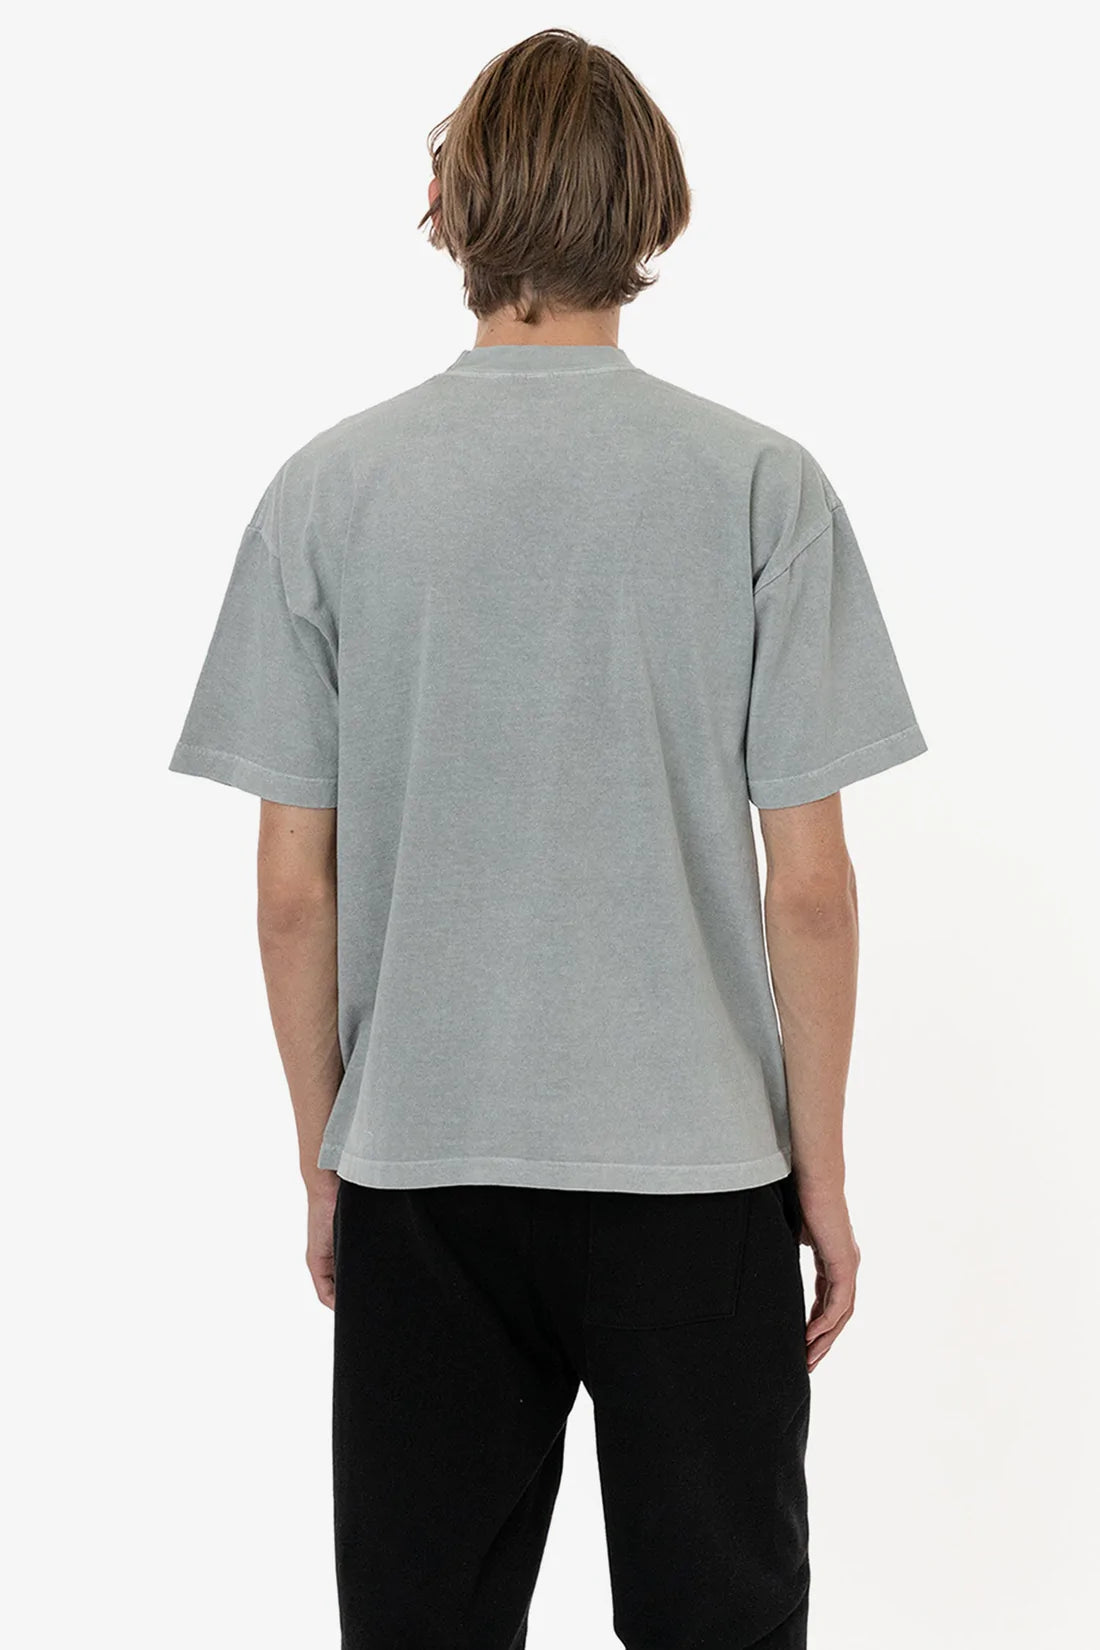 Dye Plus A2Z Mona Apparel Apparel | Oz. x 6.5 Size – Garment | T-Shirt LA Crewneck Wholesale T-Shirt